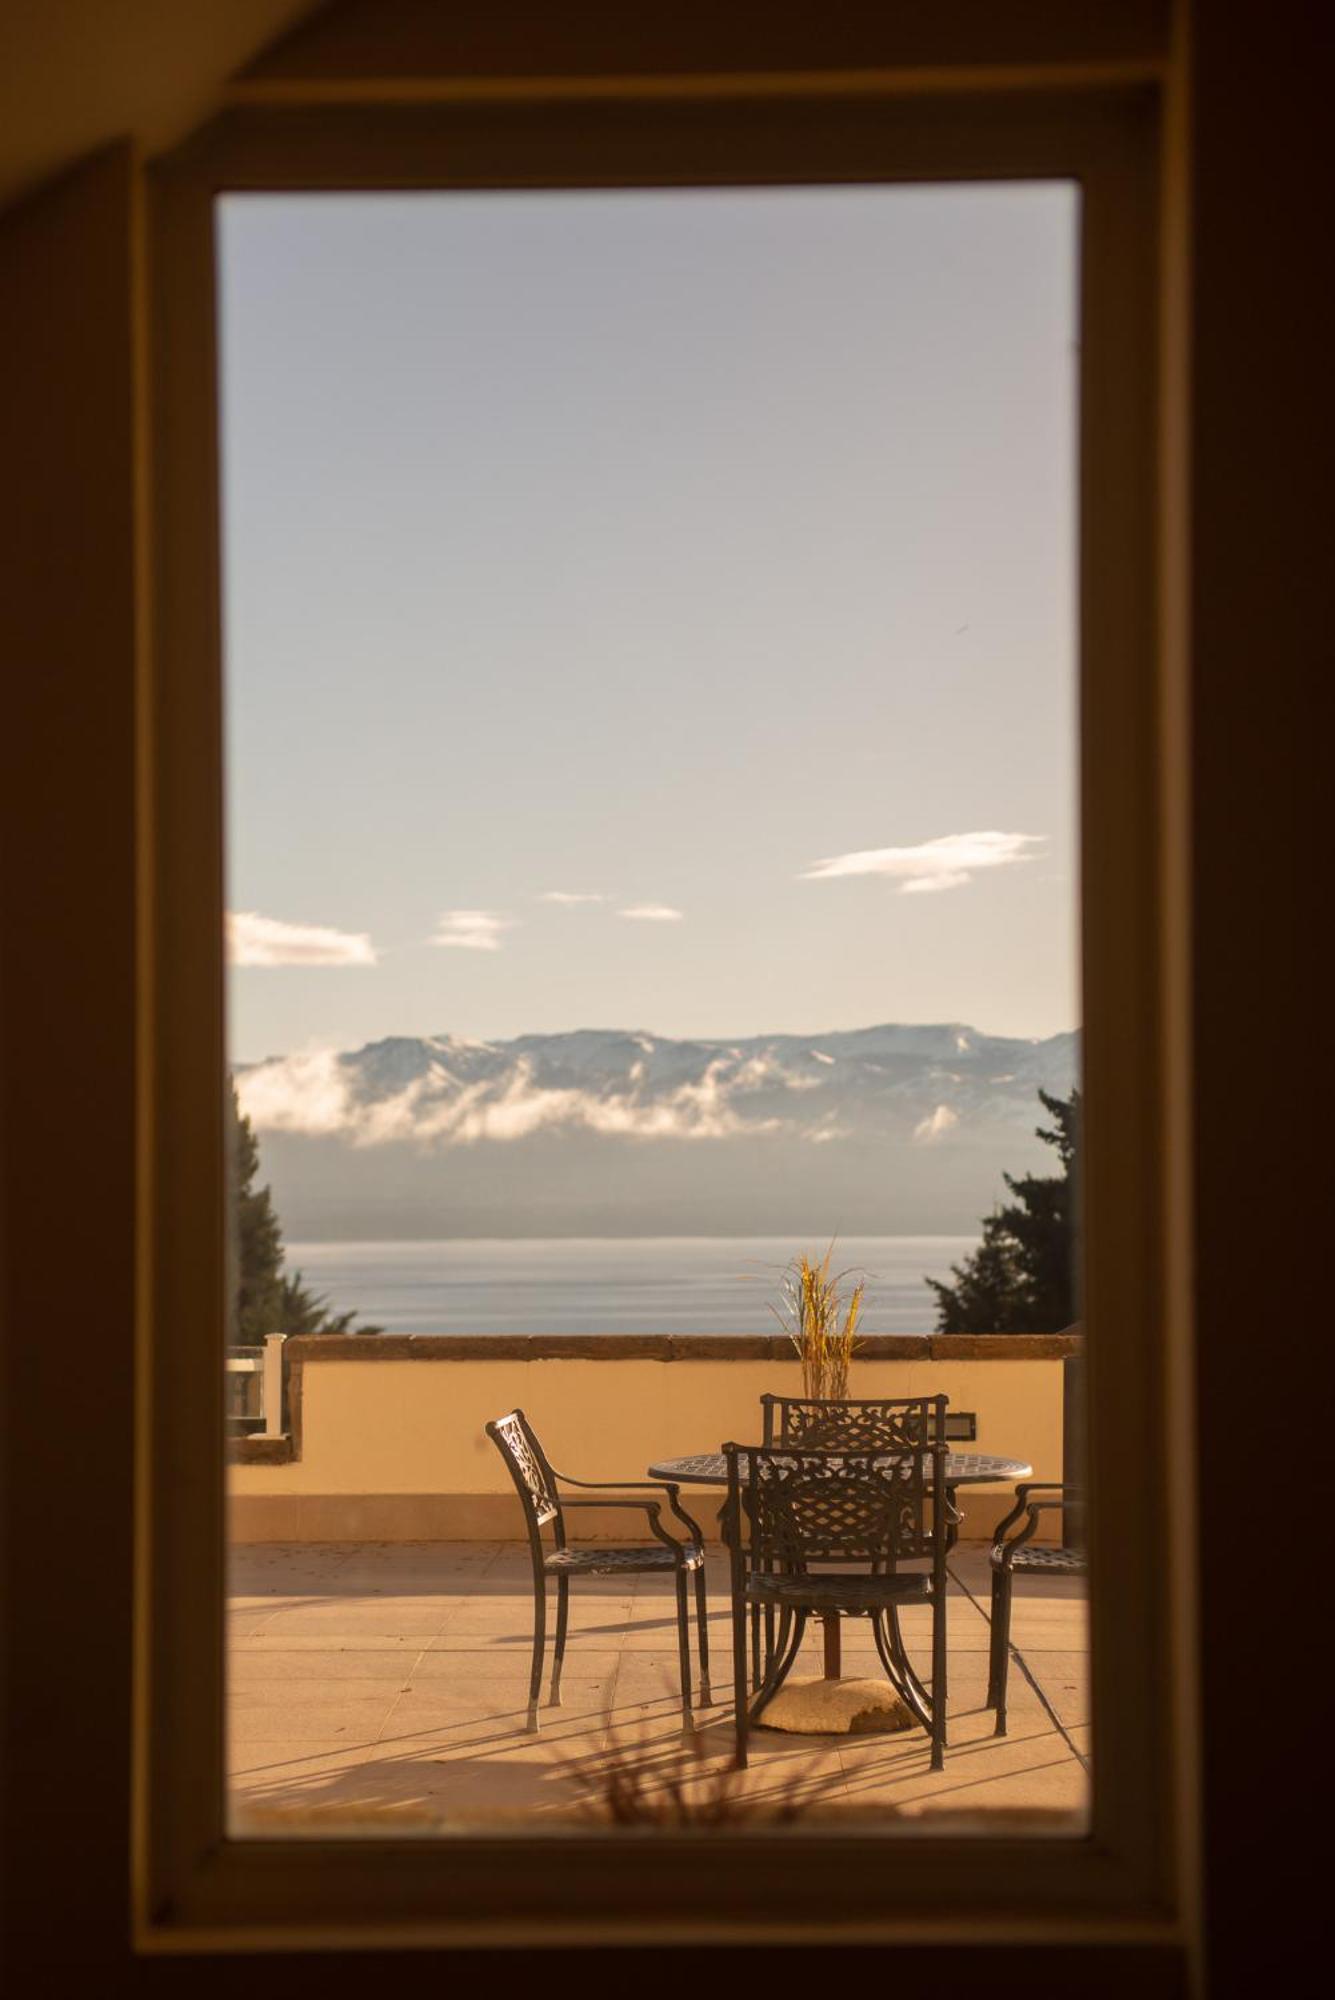 Huinid Bustillo Hotel & Spa San Carlos de Bariloche Exterior foto